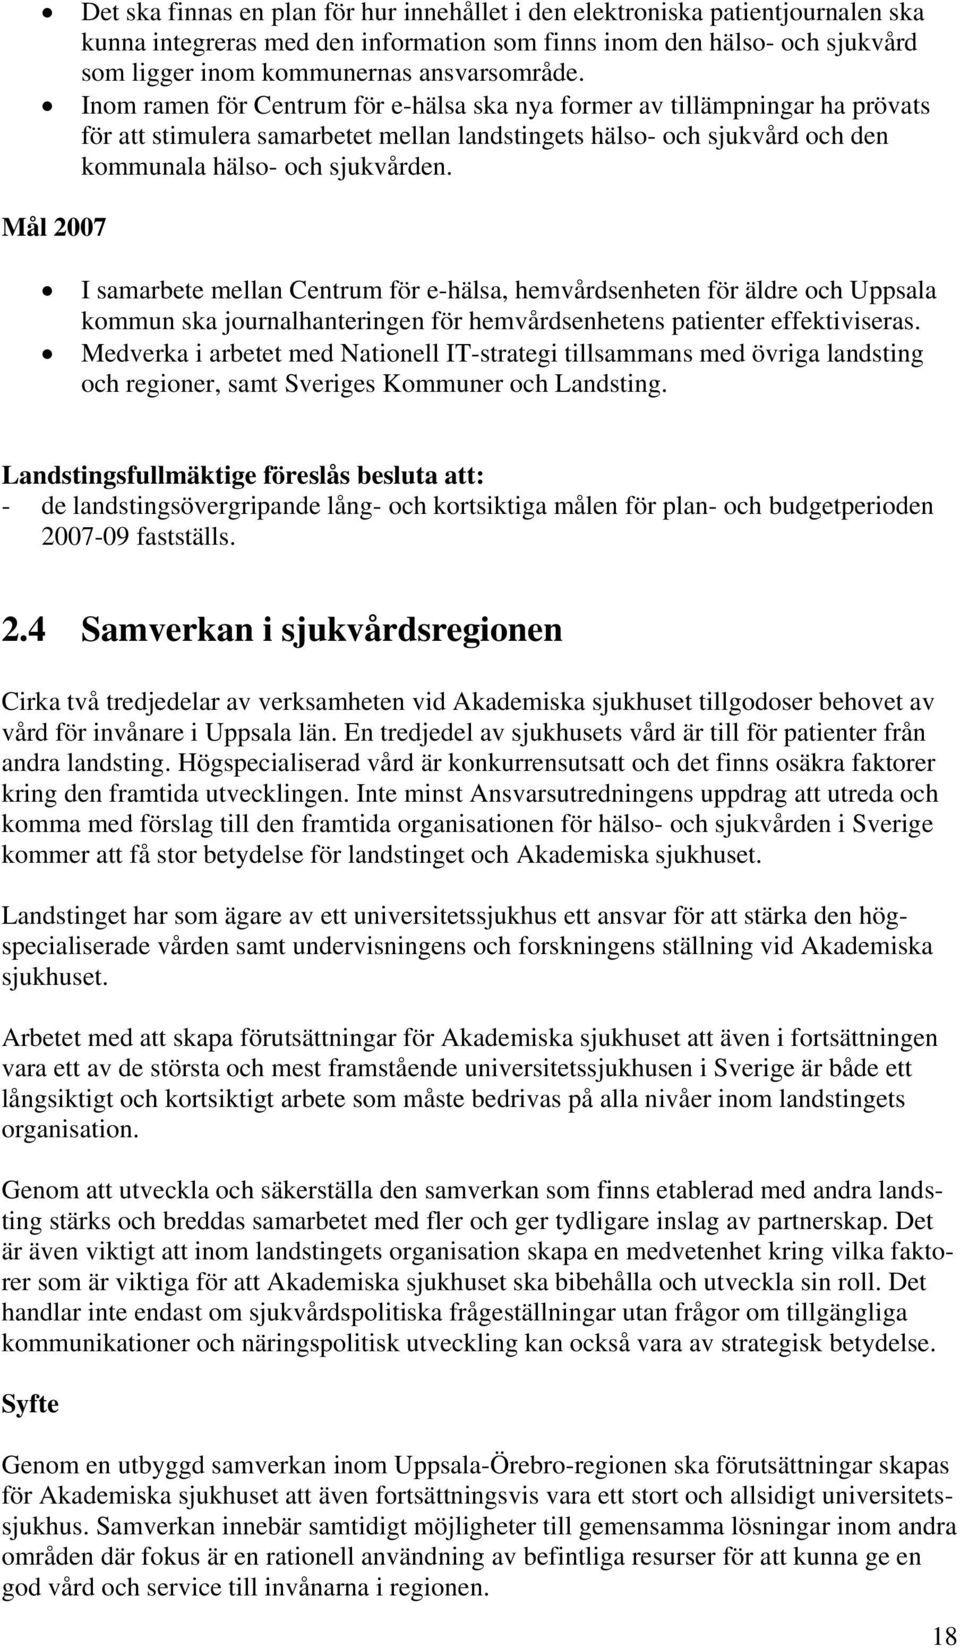 Mål 2007 I samarbete mellan Centrum för e-hälsa, hemvårdsenheten för äldre och Uppsala kommun ska journalhanteringen för hemvårdsenhetens patienter effektiviseras.